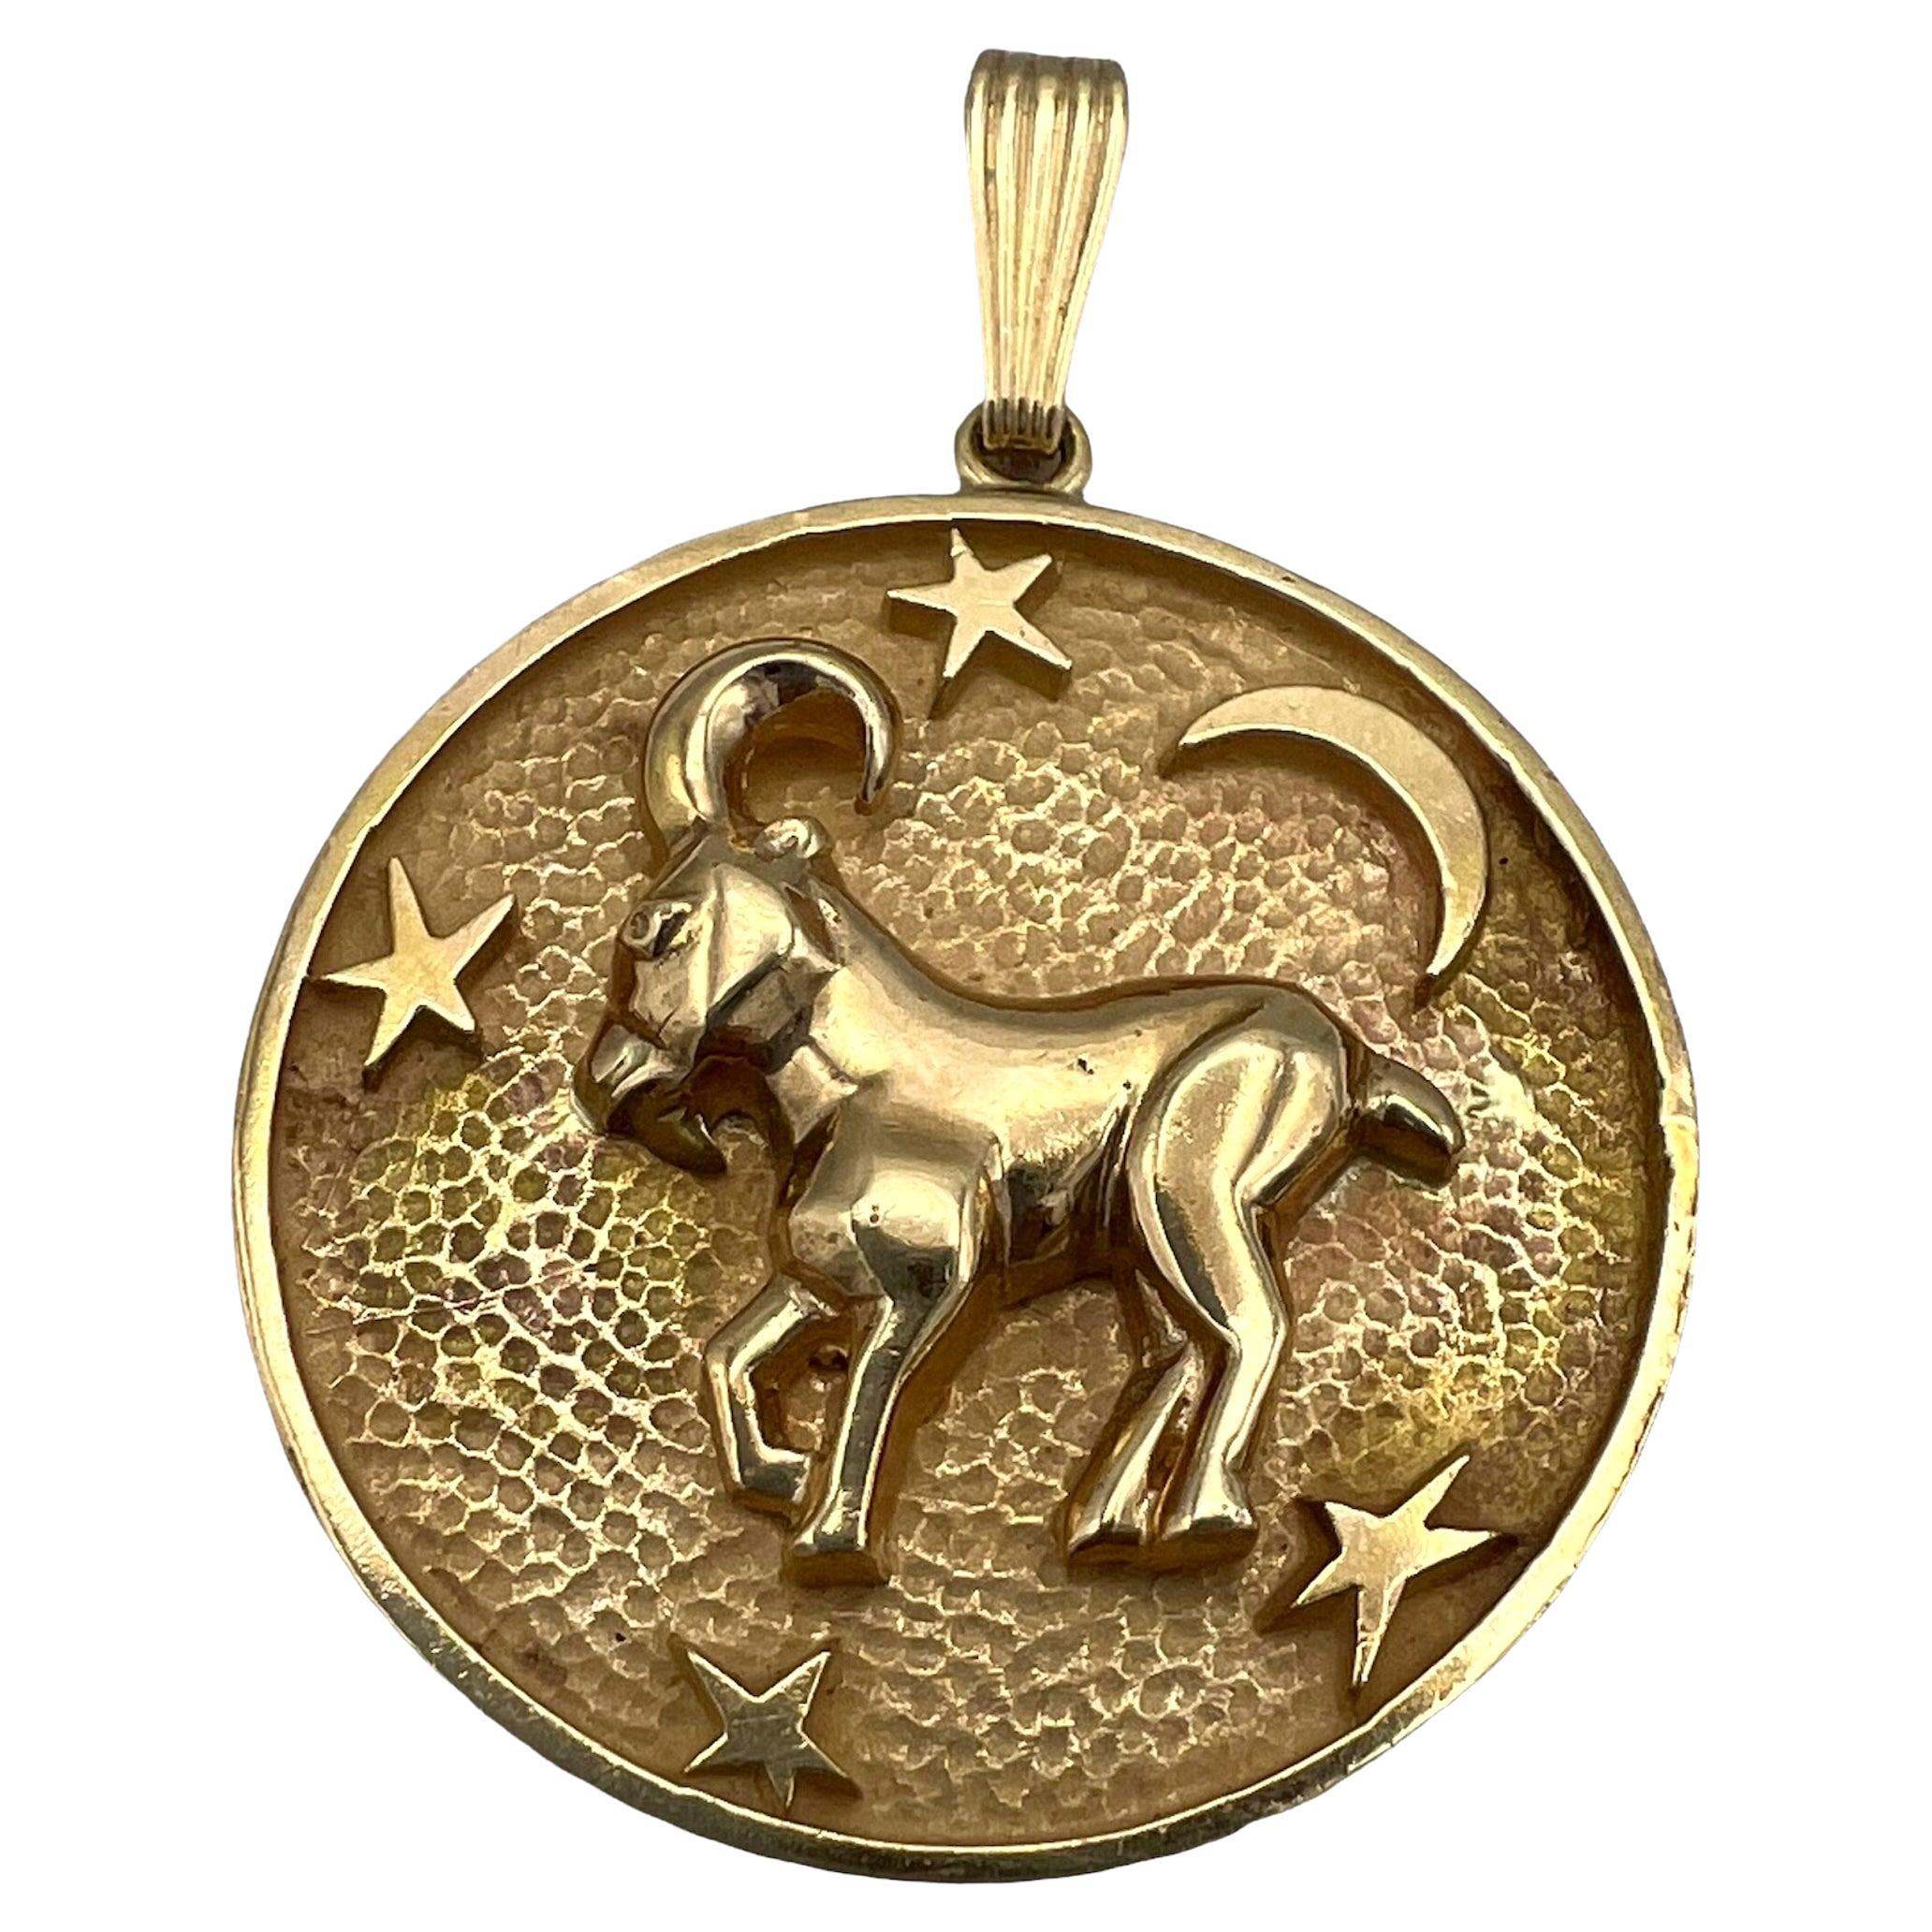 Vintage Gold Astrological Pendant, Capricorn, 14k